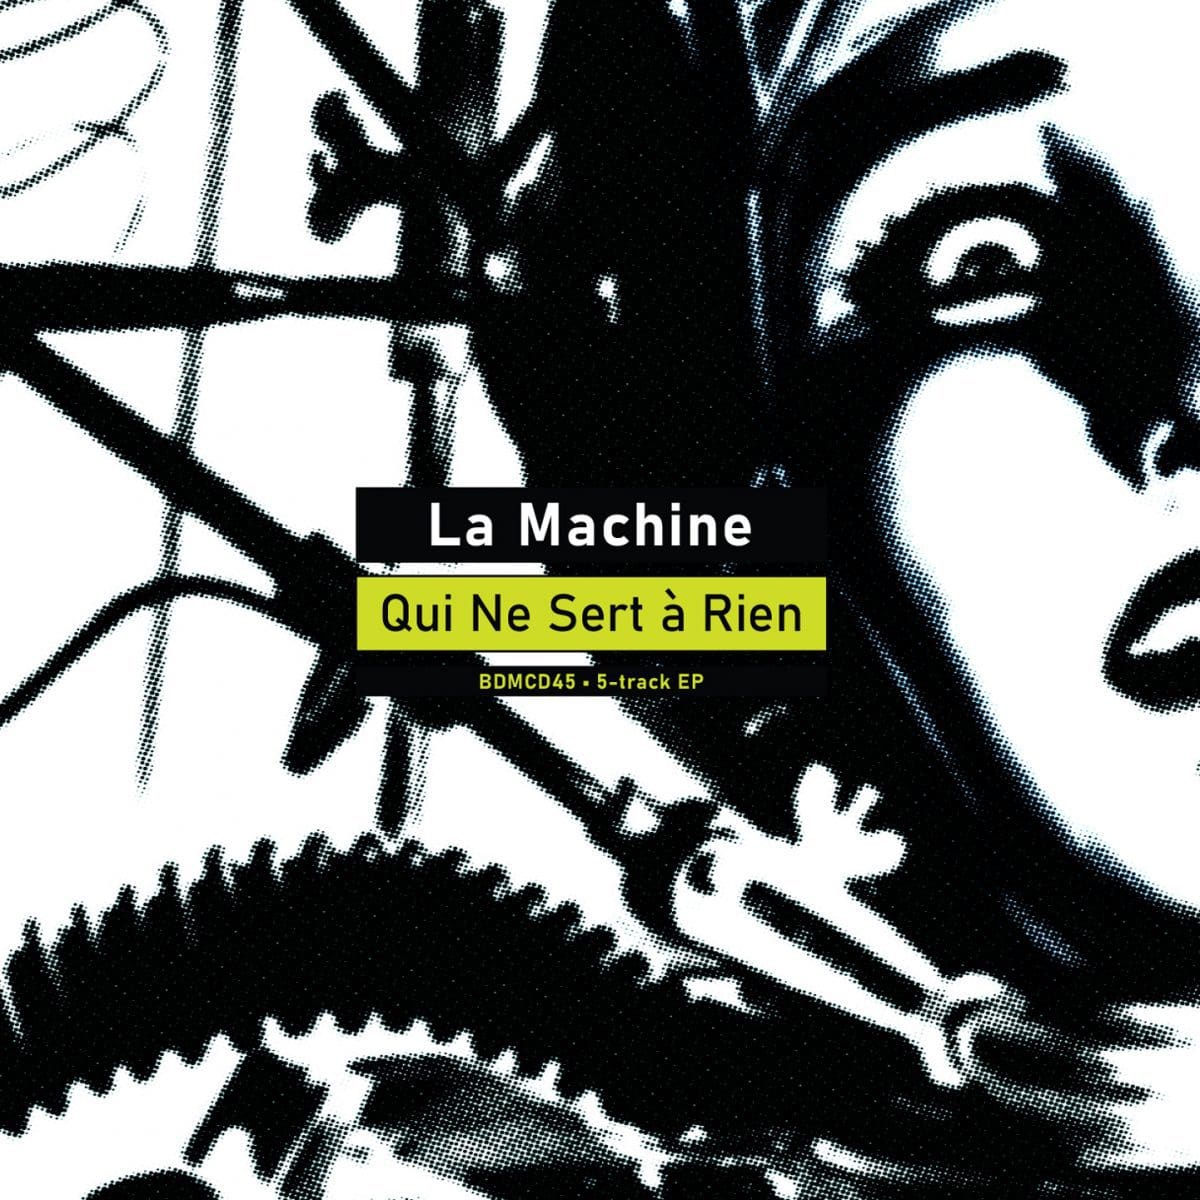 La Machine – La Machine (qui Ne Sert a Rien) (ep – Boredomproduct)